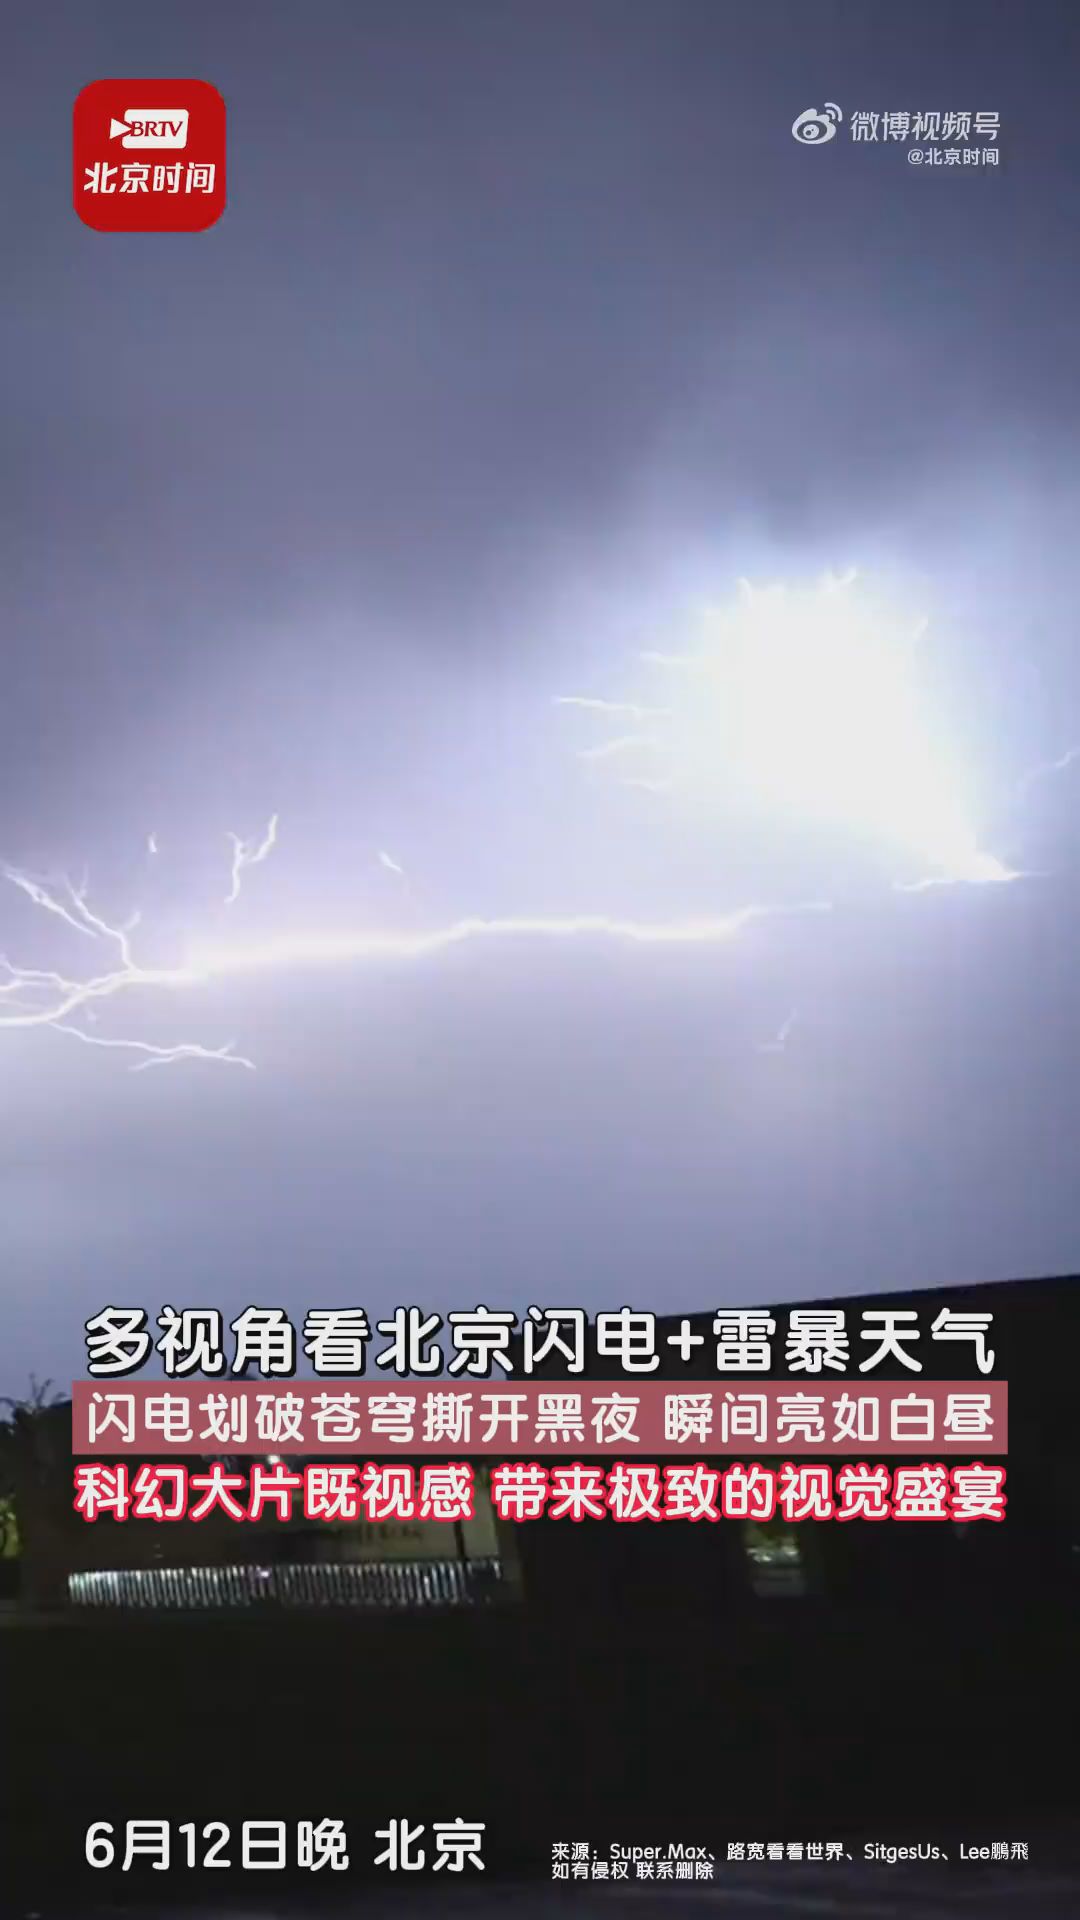 多视角看北京闪电加雷暴天气